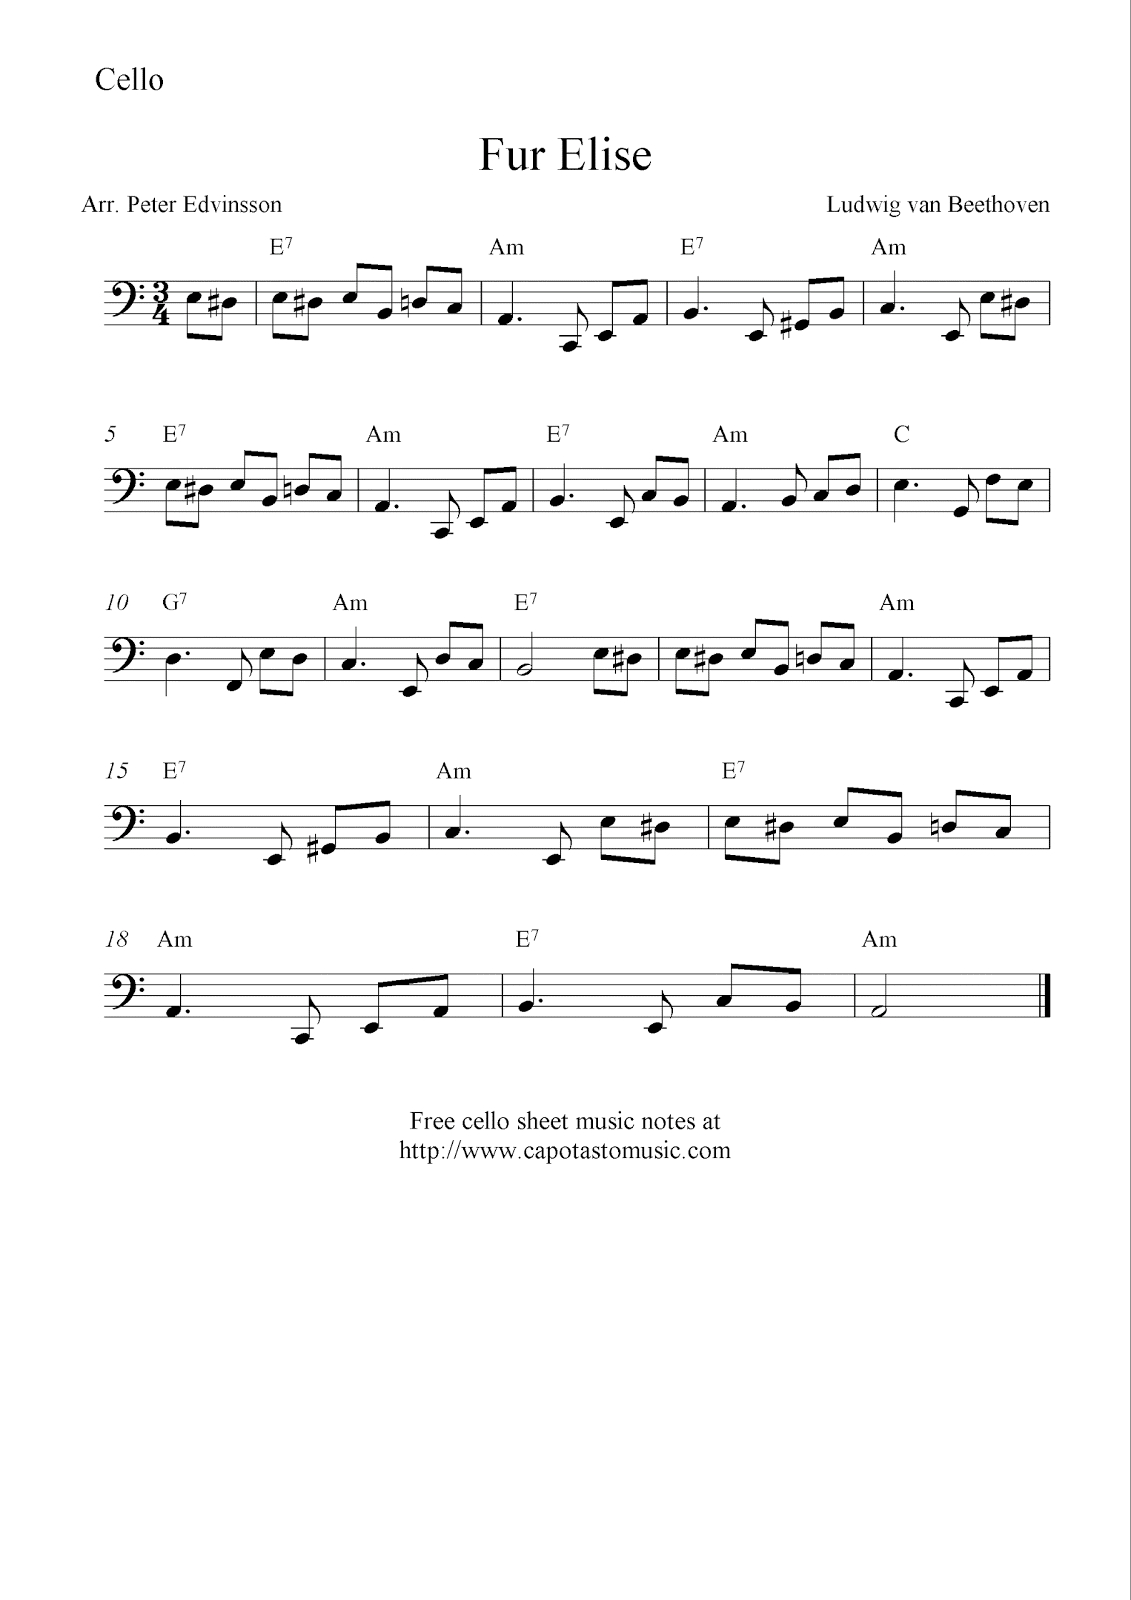 Fur Elise, Free Cello Sheet Music Notes - Free Printable Piano Sheet Music Fur Elise